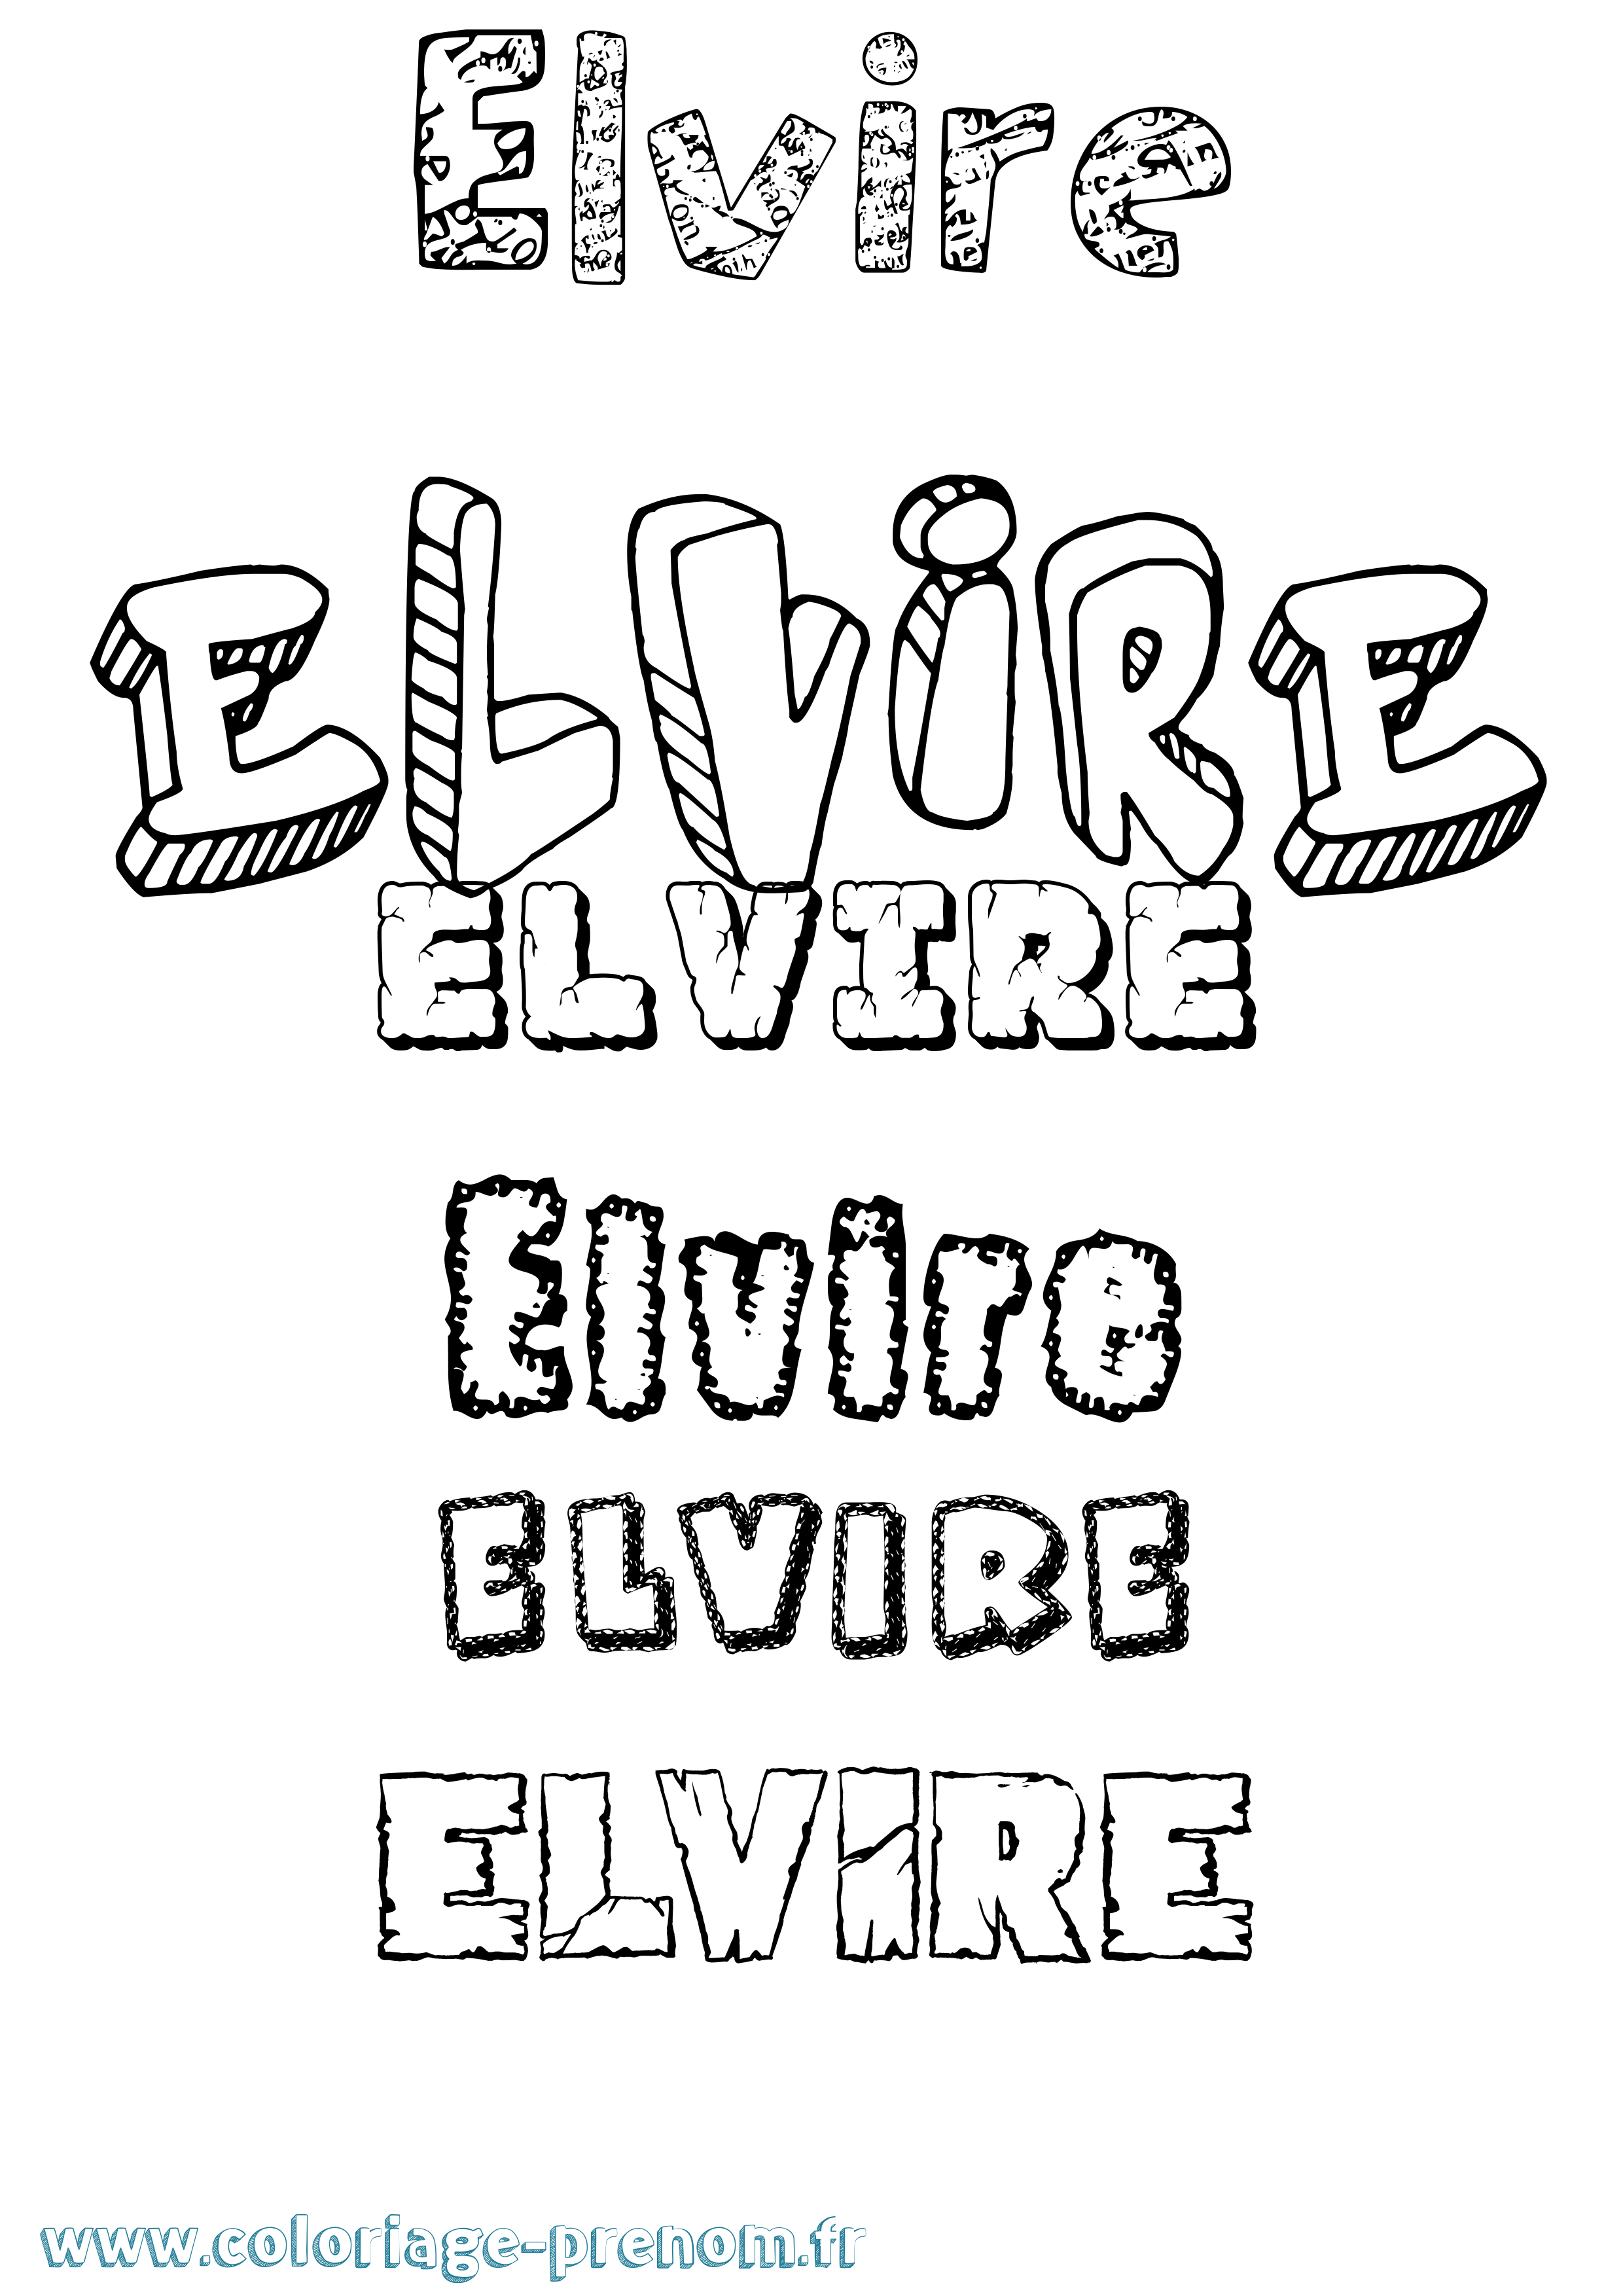 Coloriage prénom Elvire